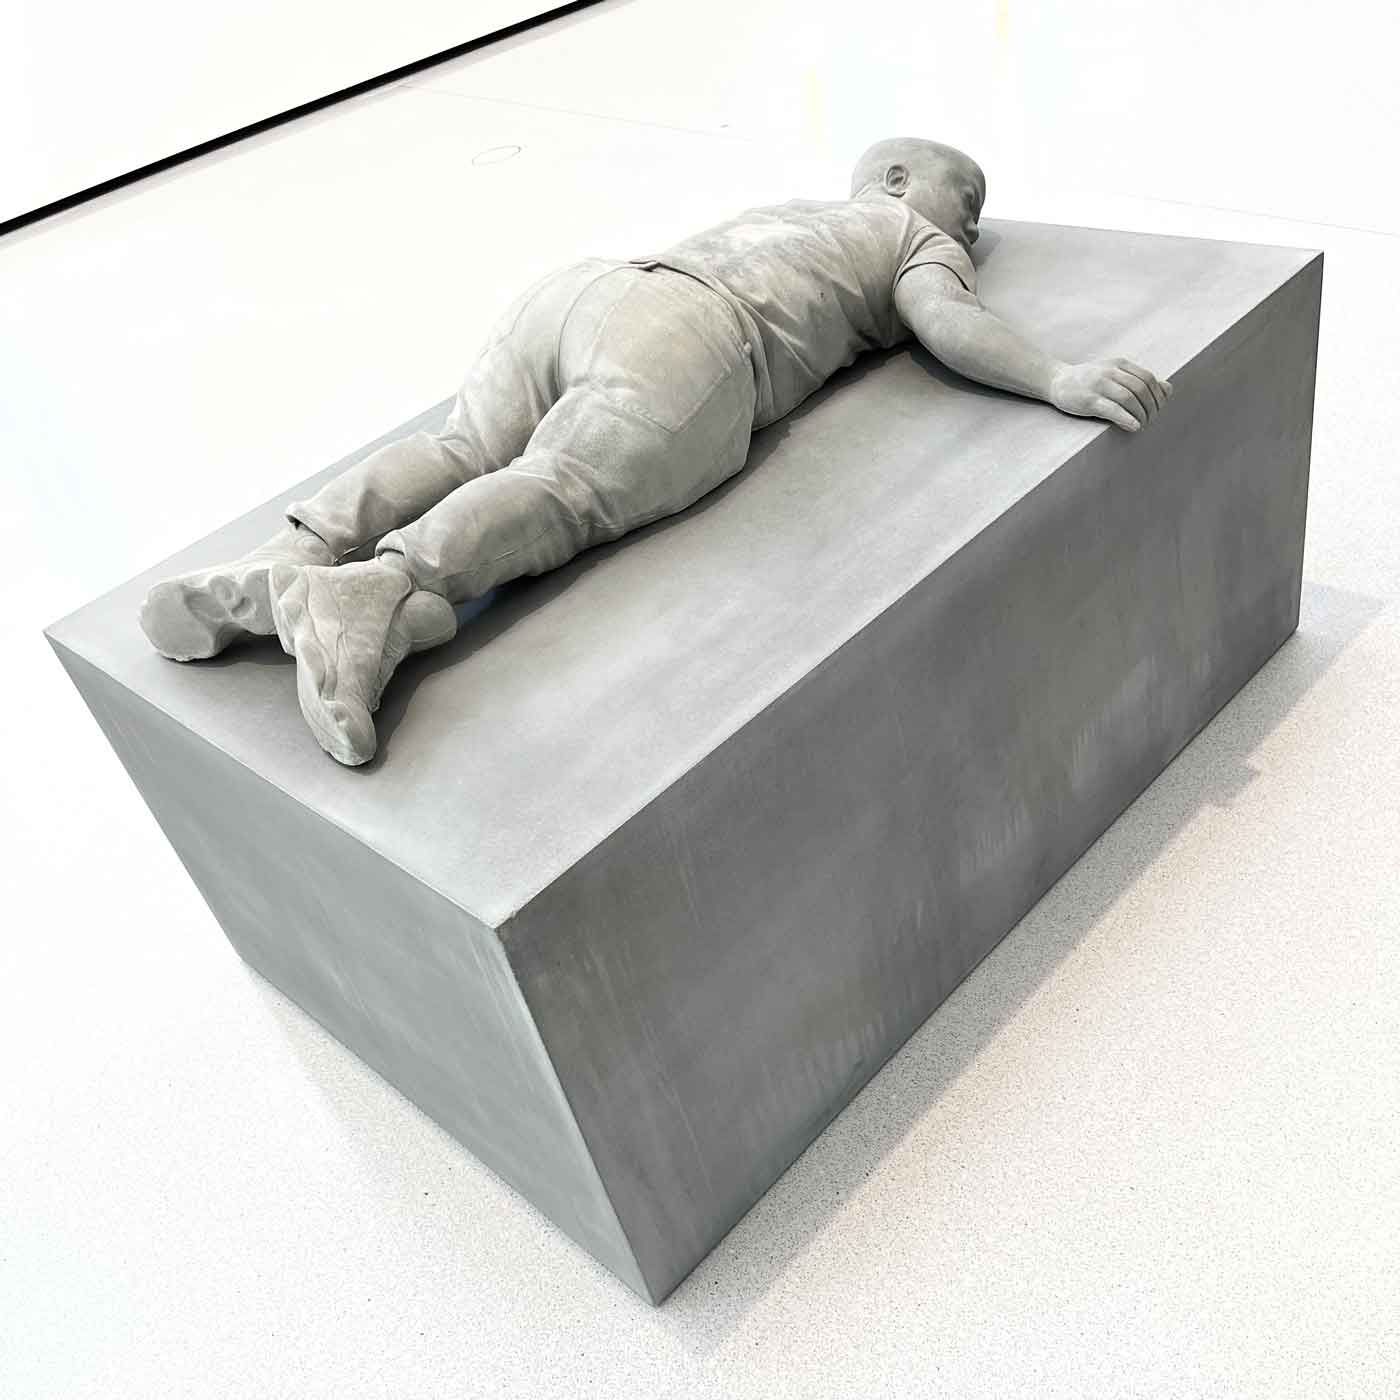 Skulptur eines Zwergs in Sneaker liegend auf einem Quader